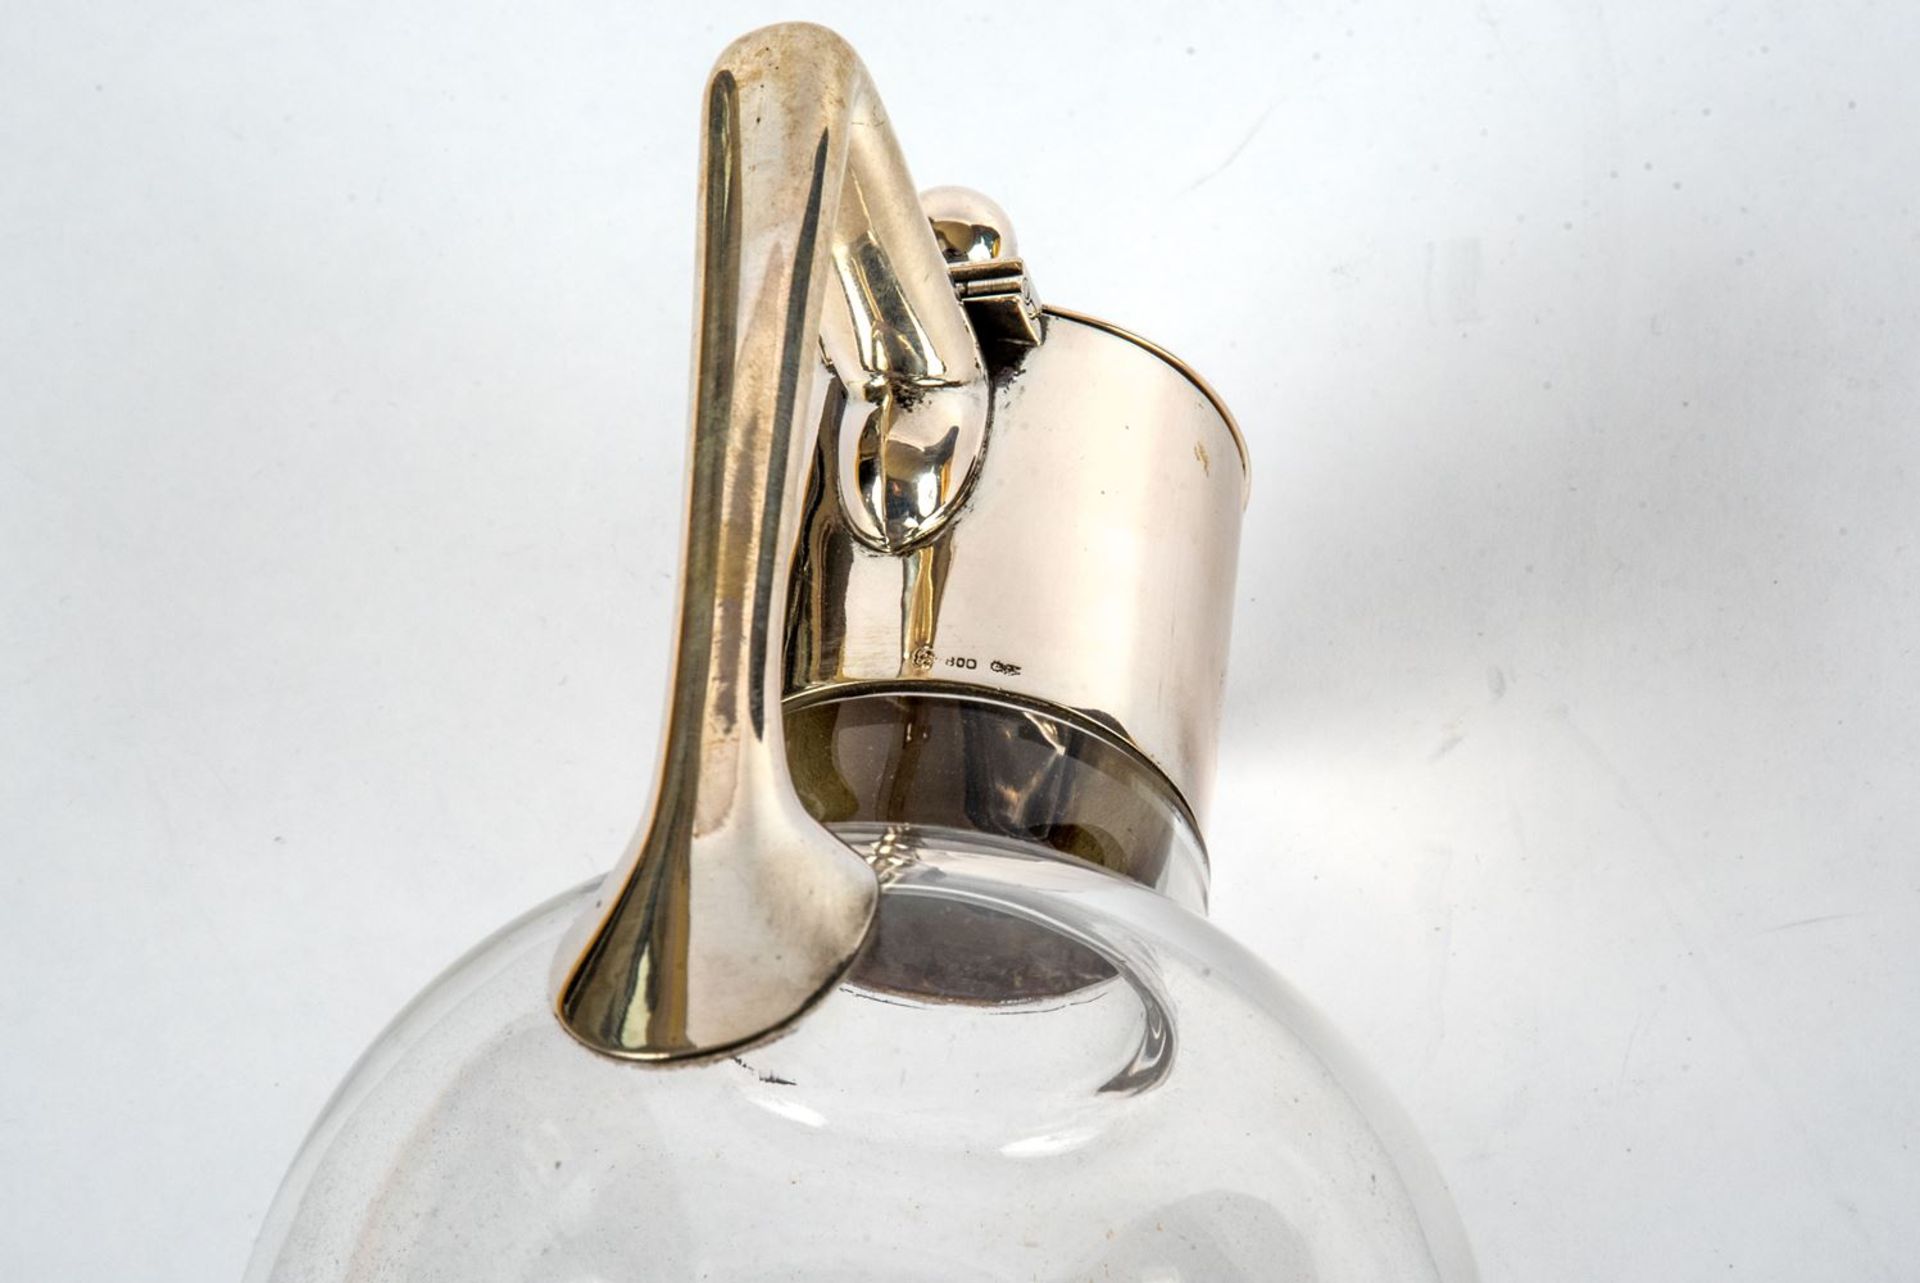 Karaffe Farbloses Glas, Stand mit Sternschliff . Gebauchter Korpus, hoher schlanker Hals mit 800 - Bild 2 aus 2